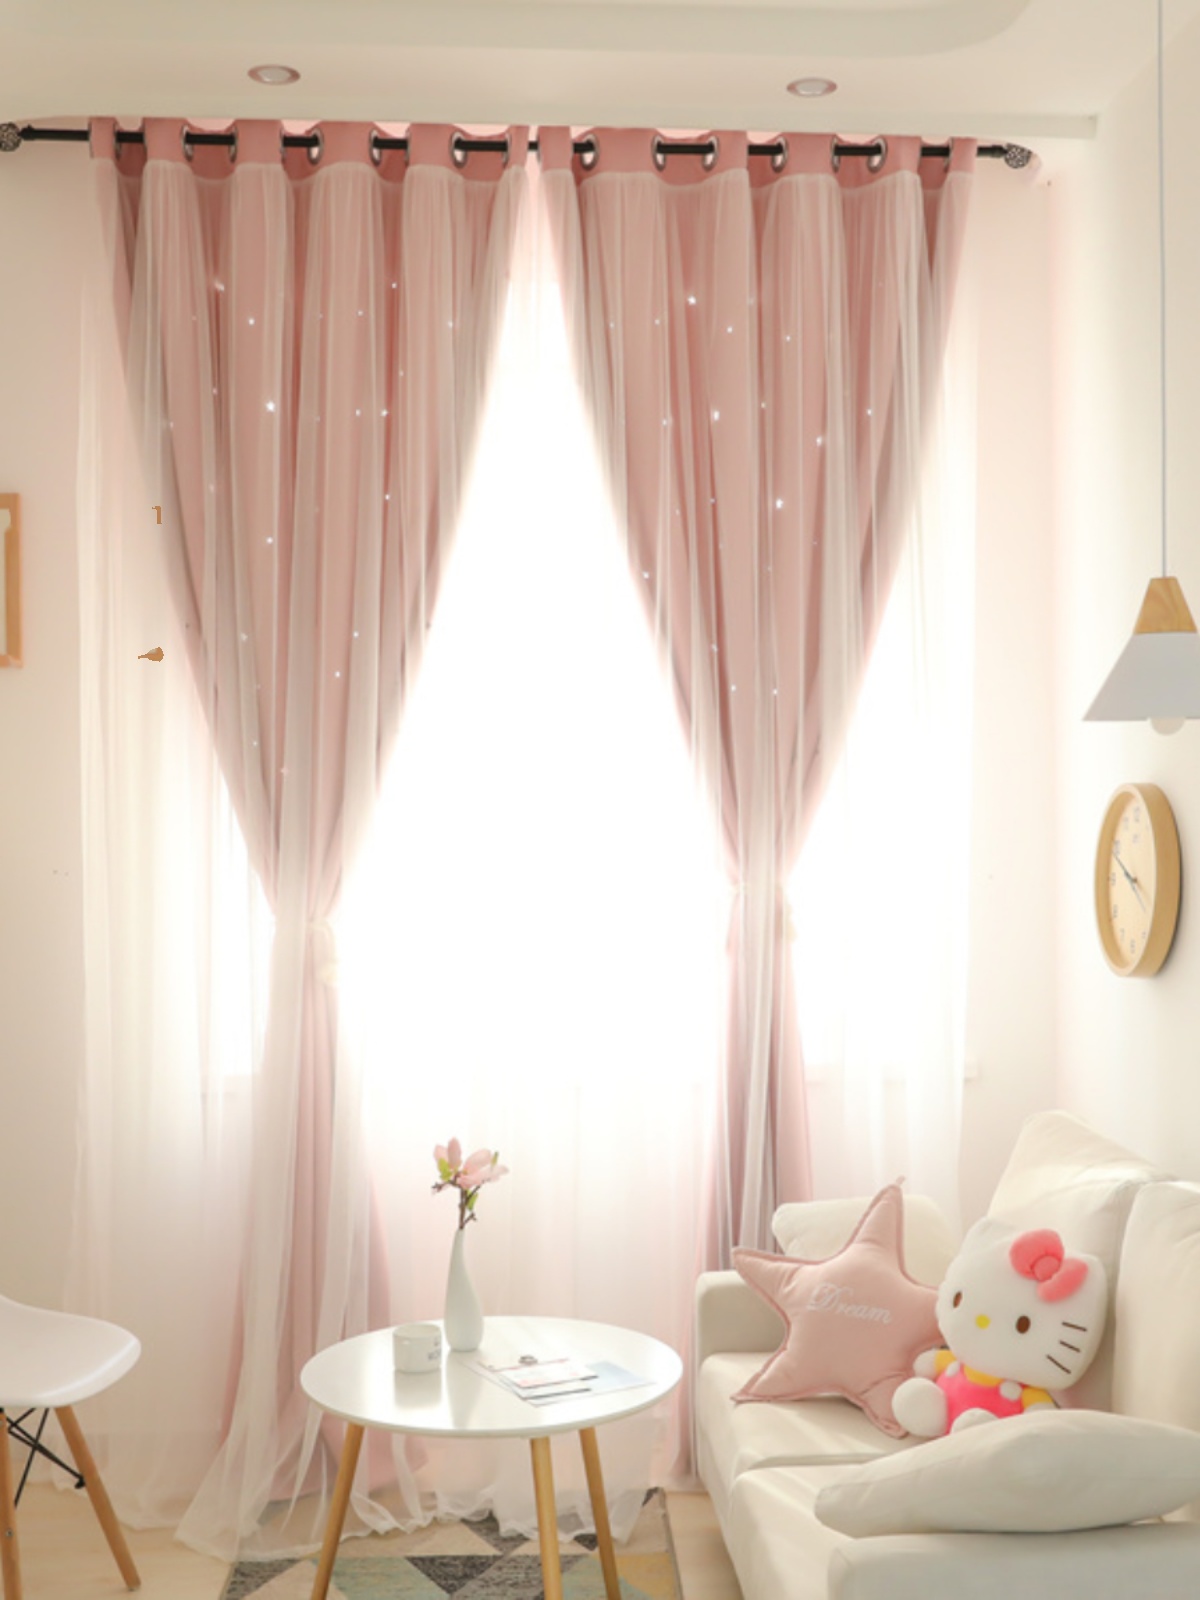 北歐韓式粉色星星雙層窗簾布 半遮光成品窗簾 臥室公主風 (4.2折)